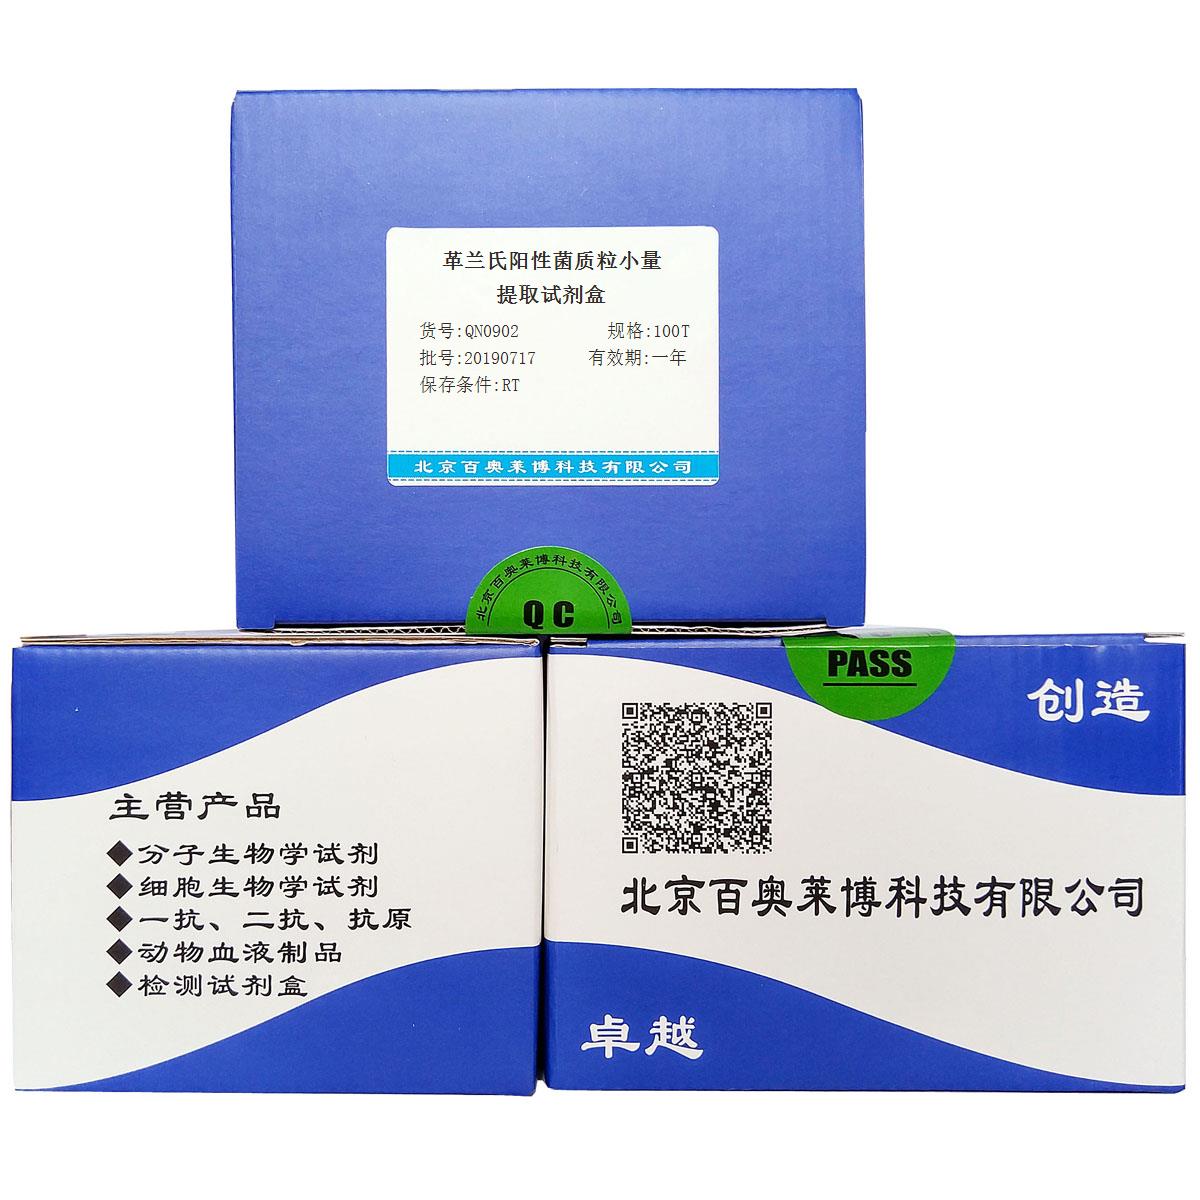 革兰氏阳性菌质粒小量提取试剂盒(1～5mL)